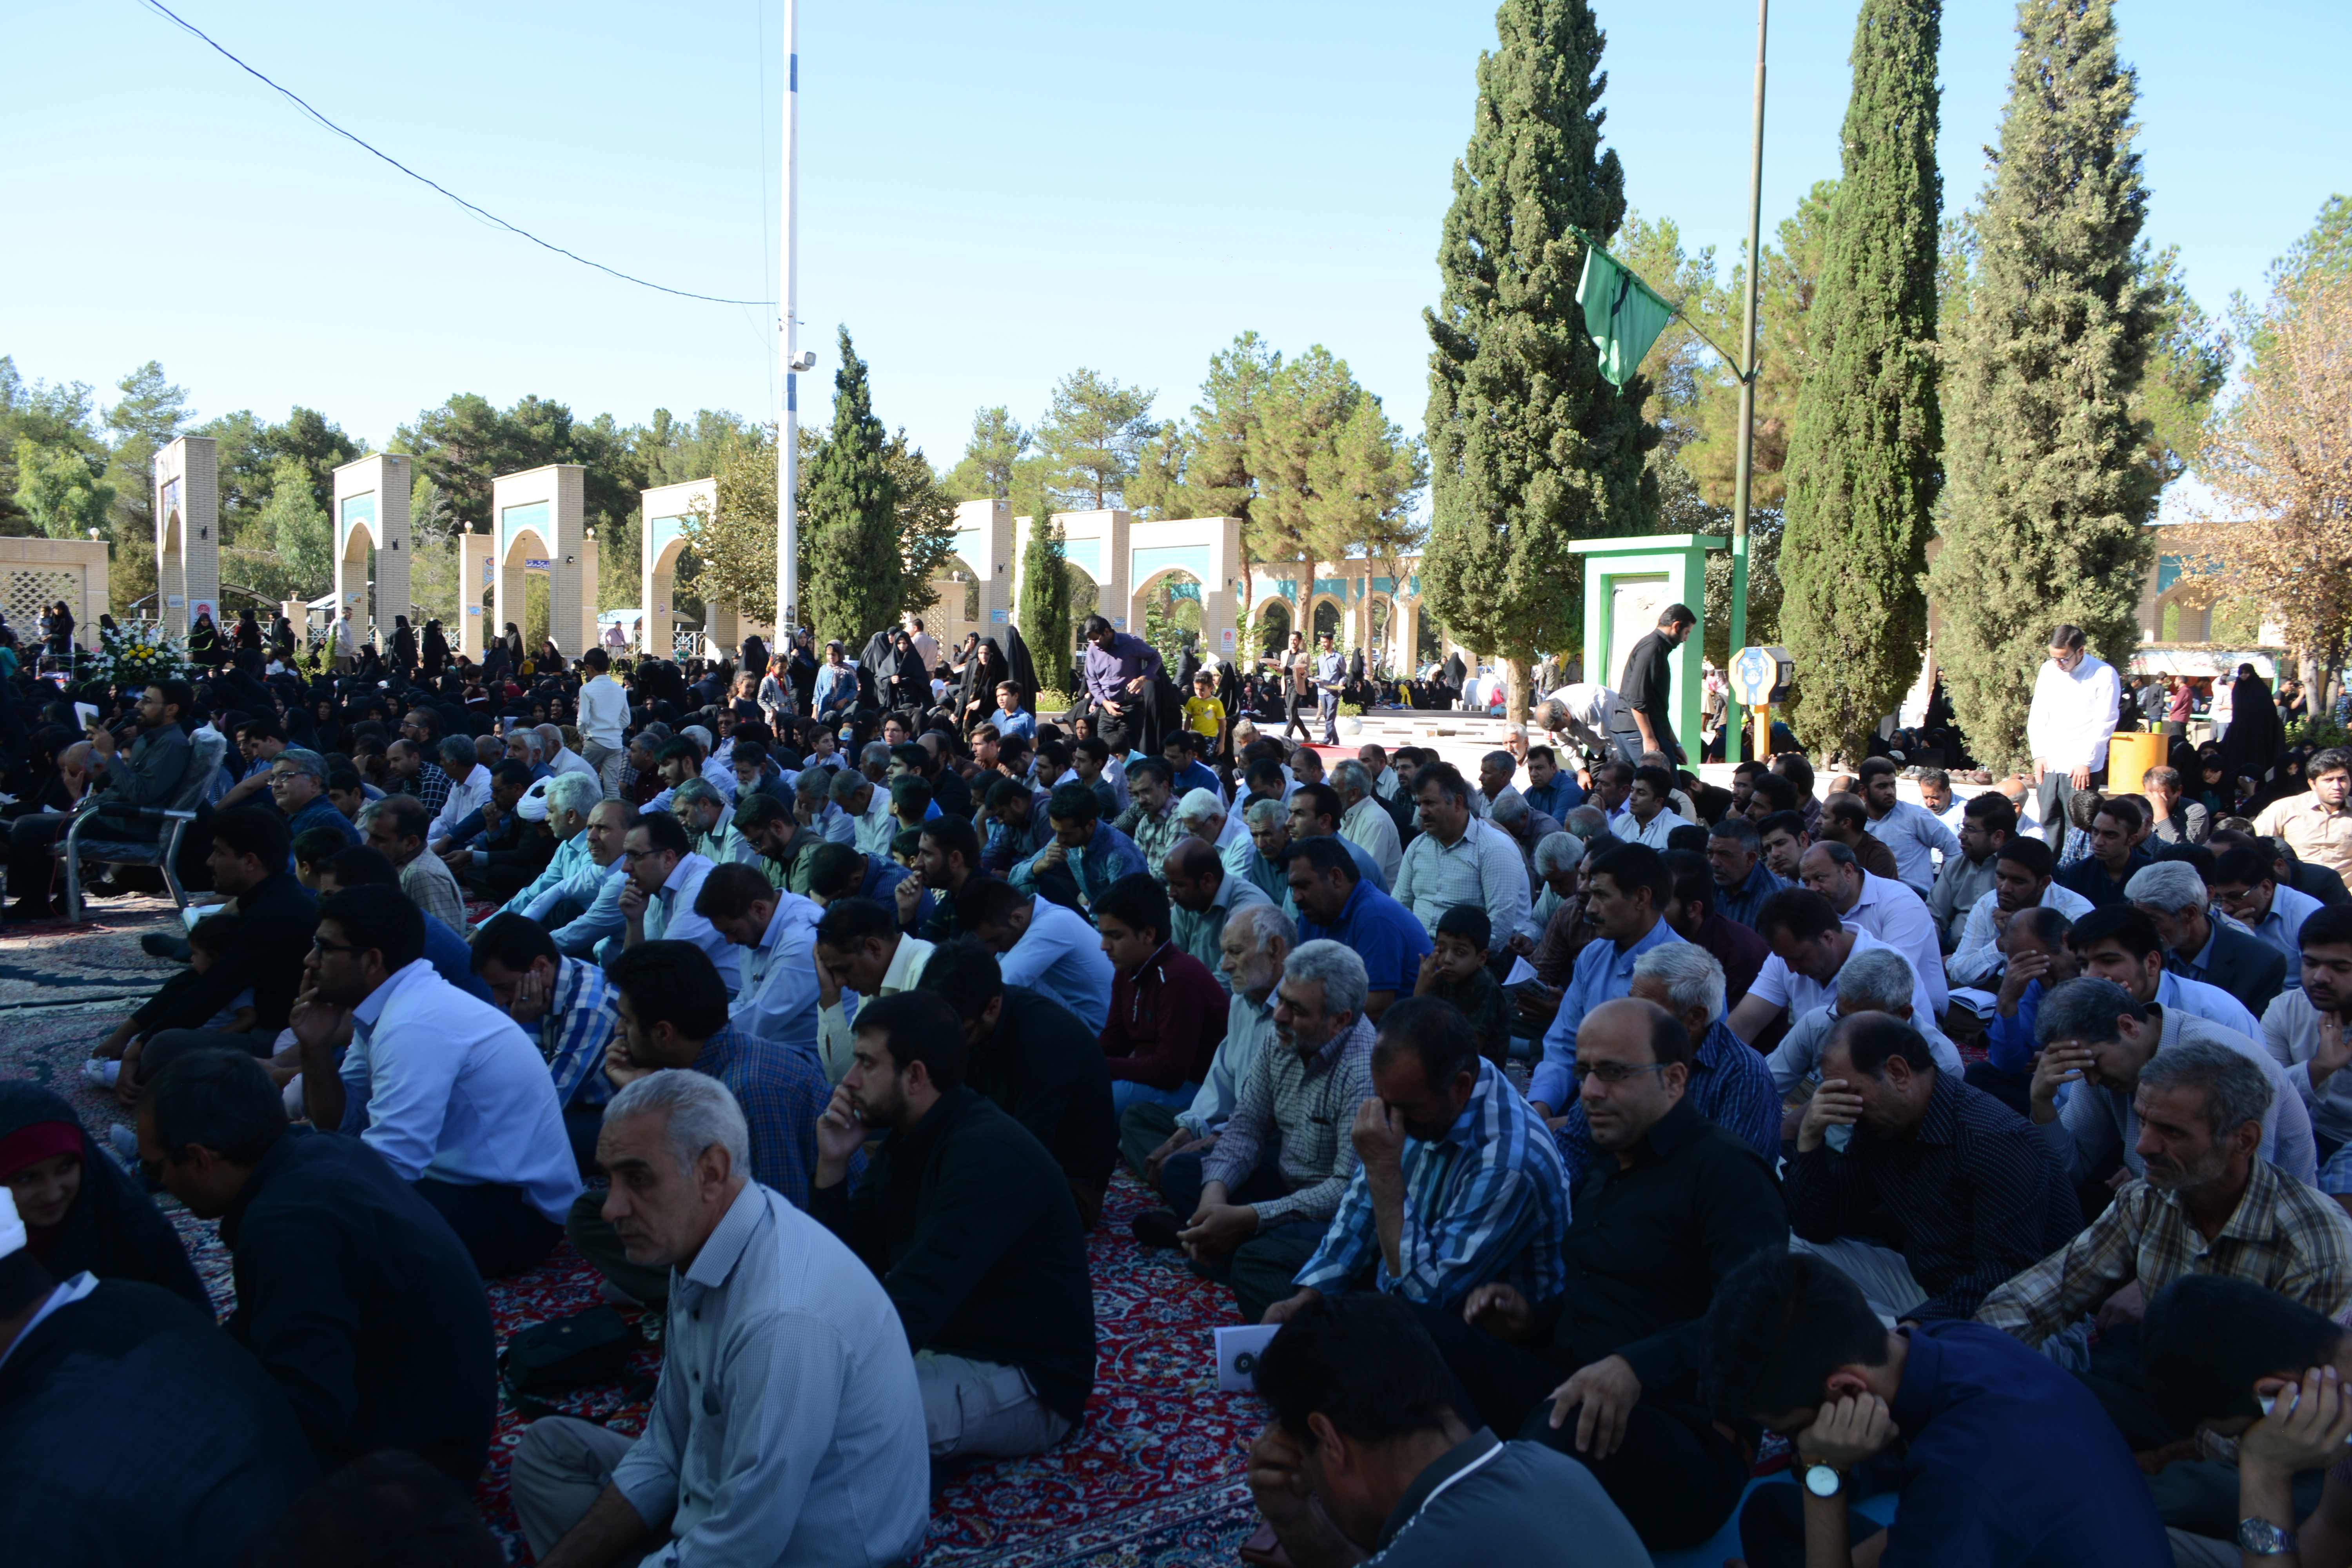 مراسم دعای عرفه در گلزار شهدای سیرجان برگزار شد/تصاویر